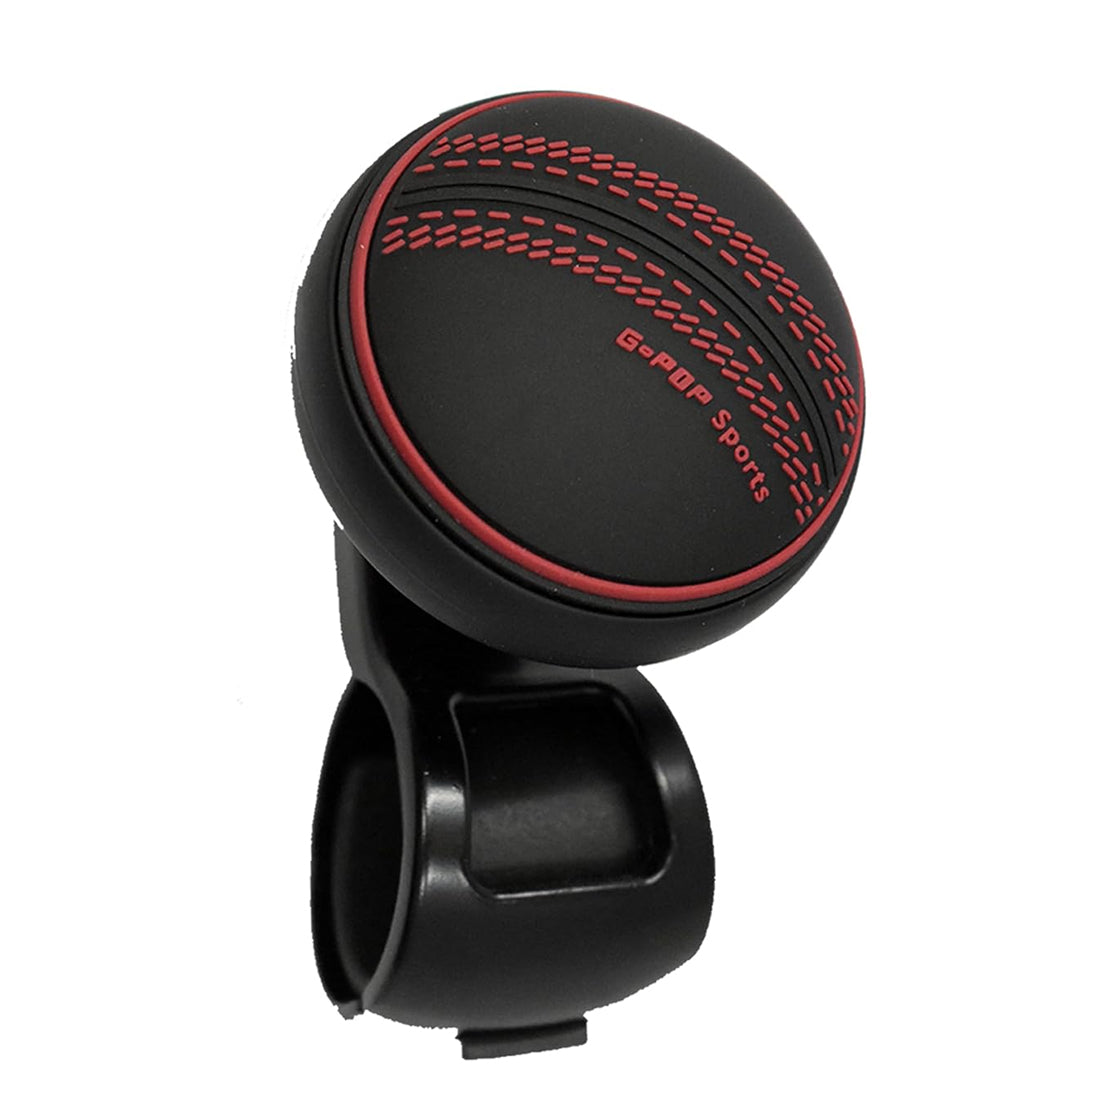 Onwheel Universal Car'S G-Pop Sports Power Handle Steering Wheel Spinner Knob In Black